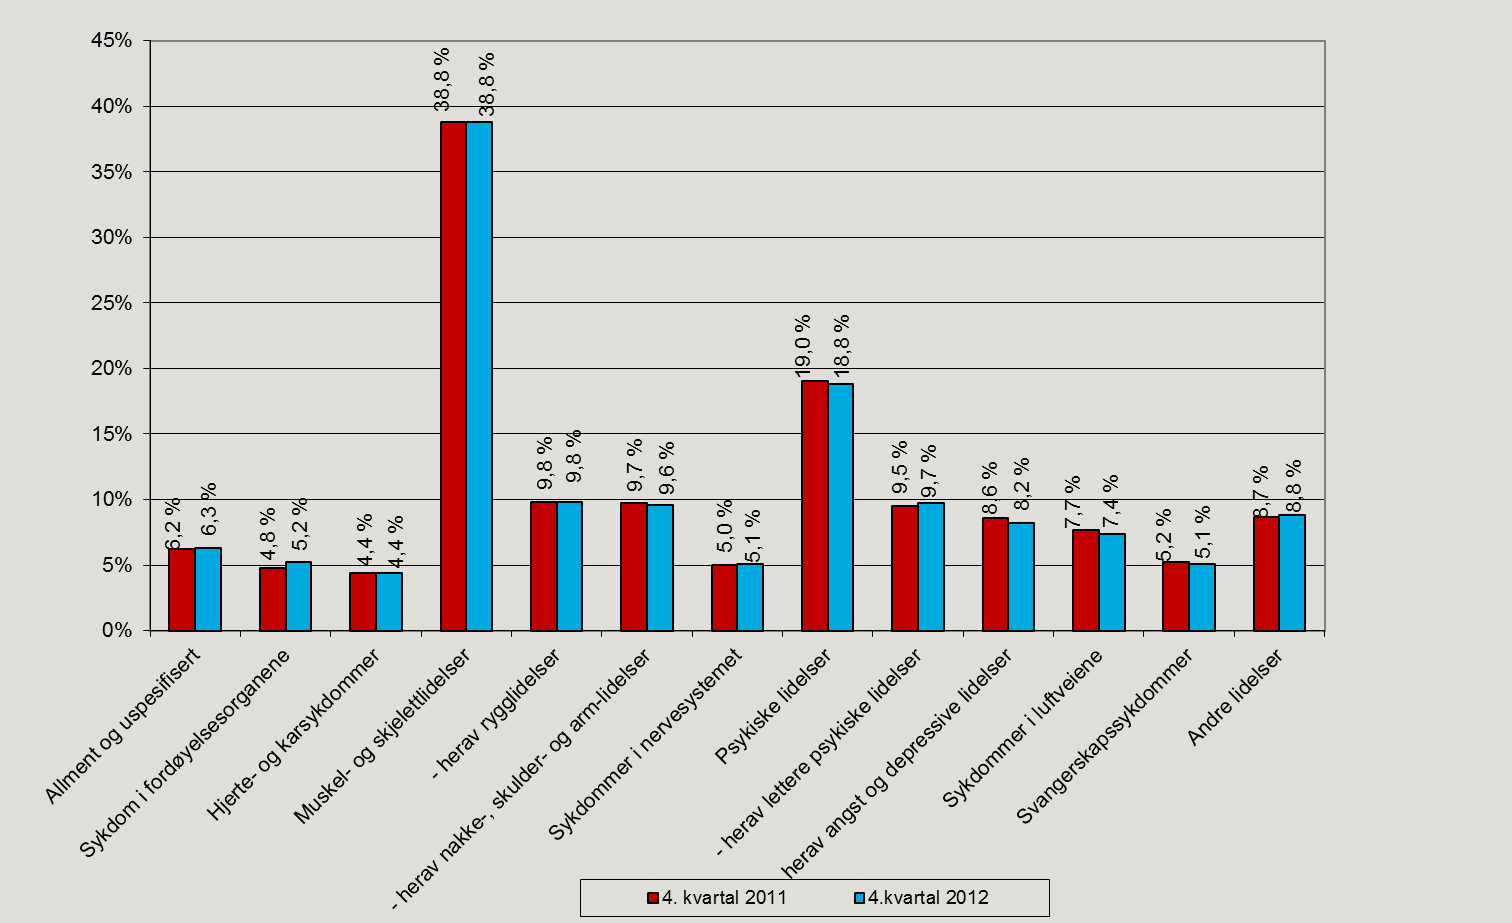 Figur 13. Legemeldte sykefraværstilfeller etter diagnose, 4. kvartal 2011 og 4. kvartal 2012. Prosent.